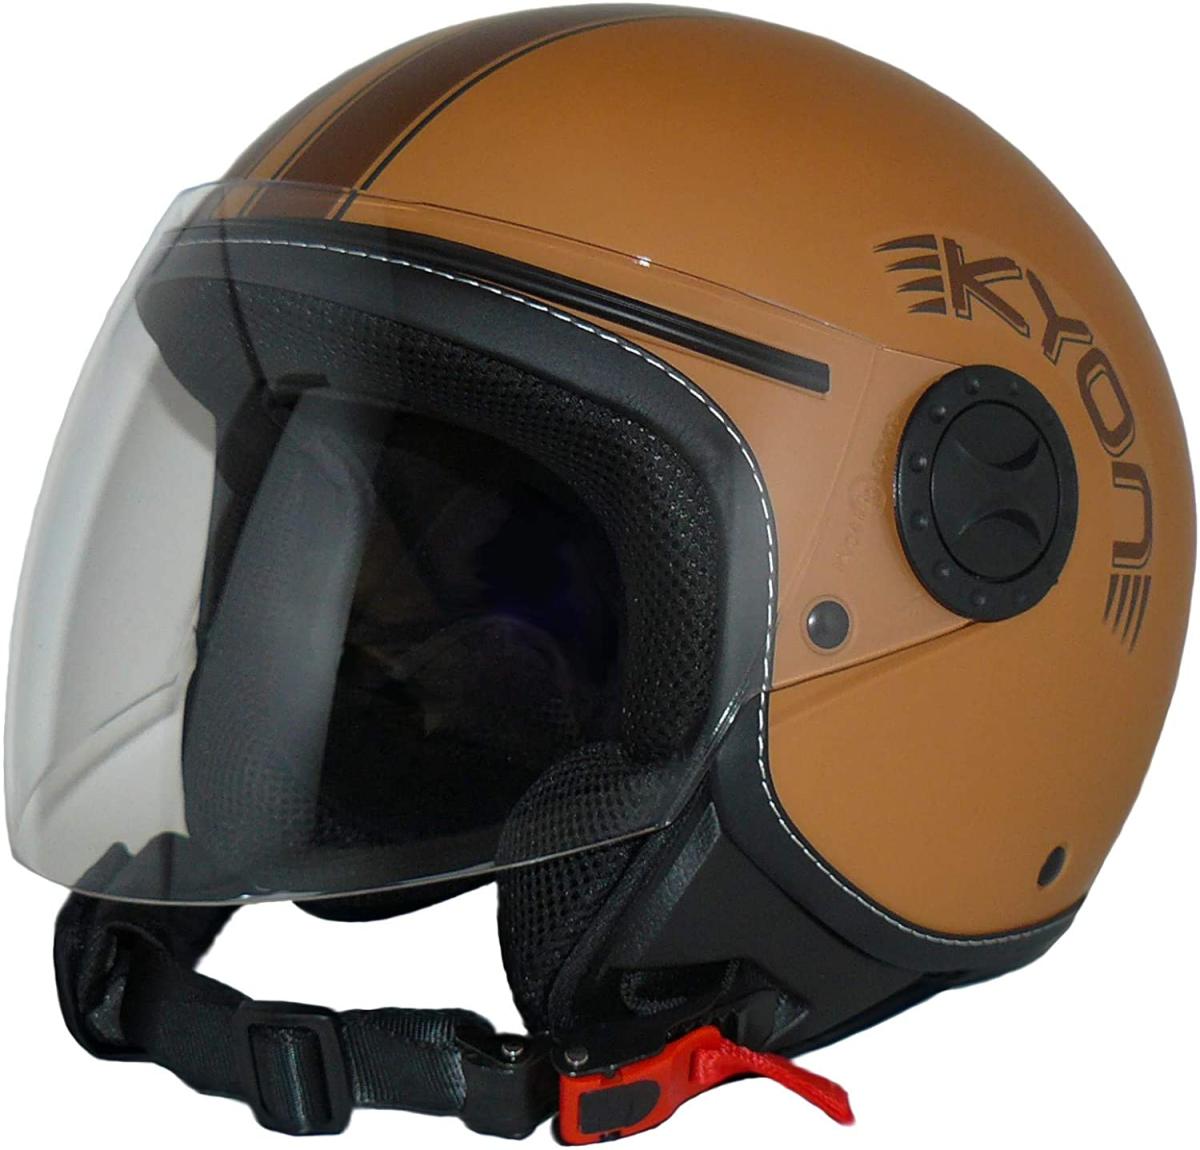 10 cascos de moto homologados por la DGT que realmente baratos -- Motos -- Autobild.es